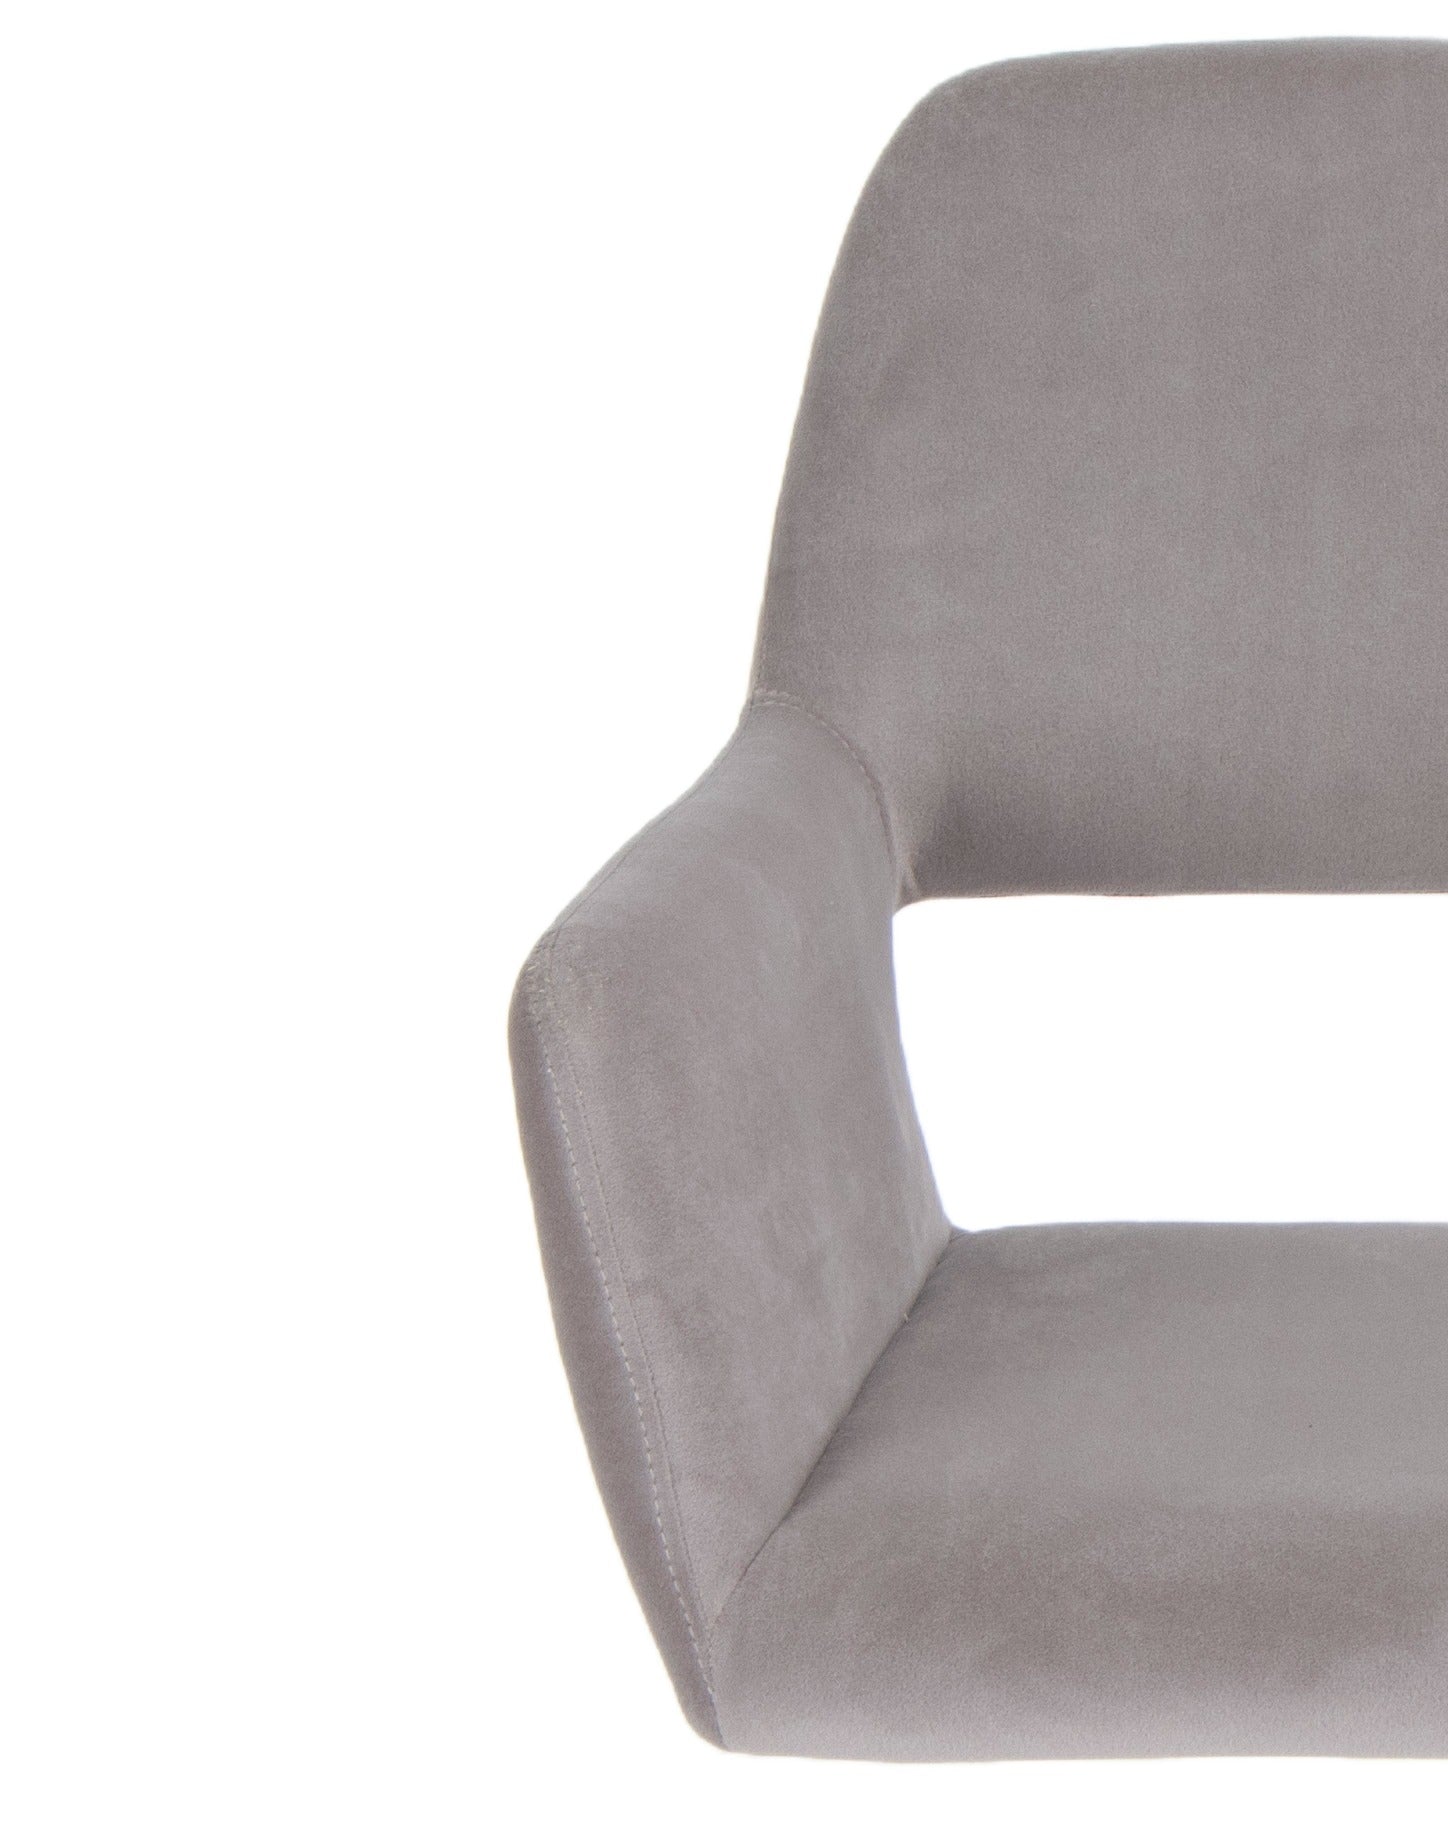 Gray Velvet Upholstered Swivel Office Chair - Tuesday Morning-Office Chairs